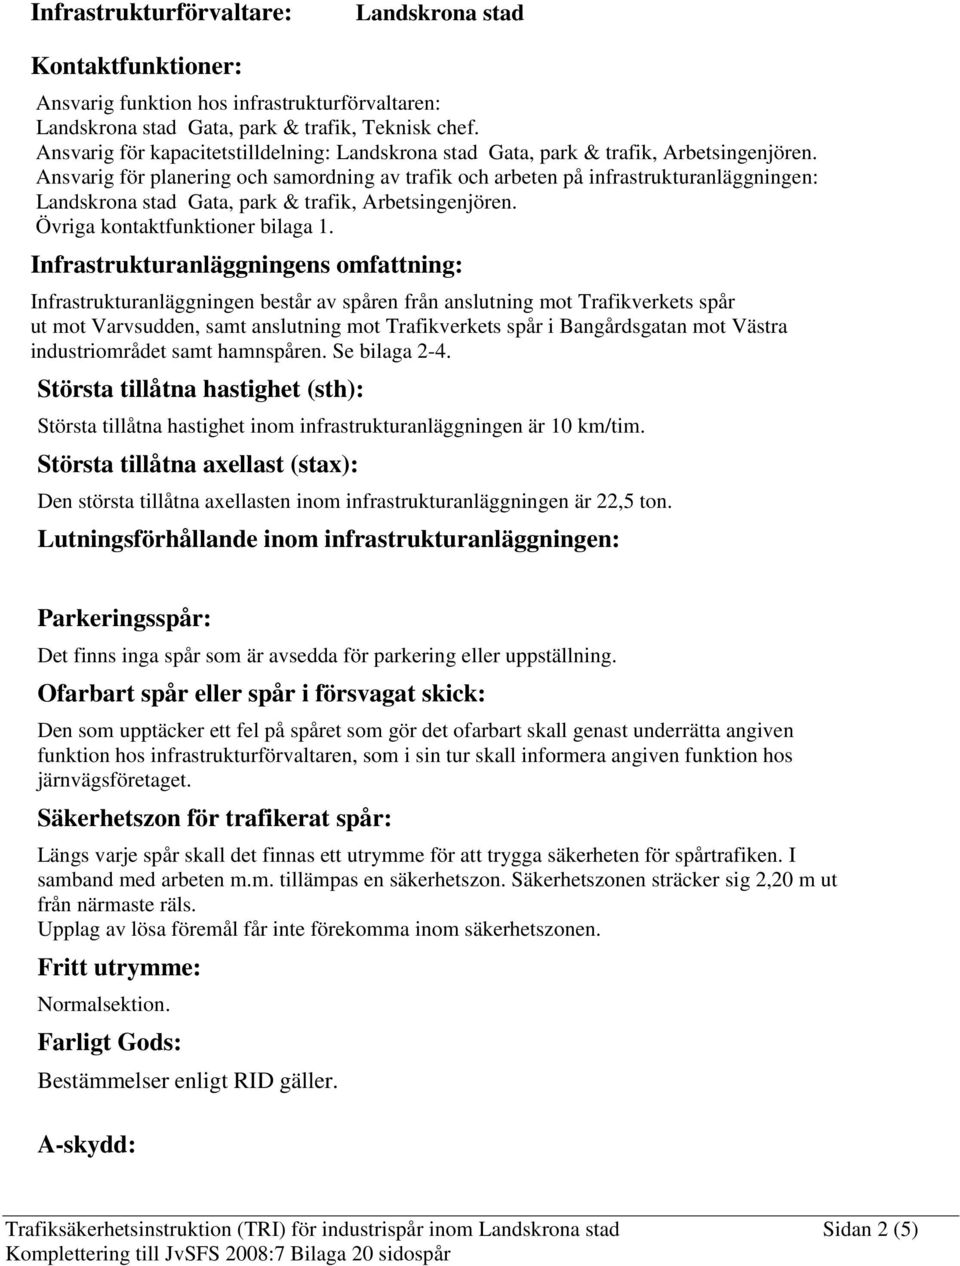 Ansvarig för planering och samordning av trafik och arbeten på infrastrukturanläggningen: Landskrona stad Gata, park & trafik, Arbetsingenjören. Övriga kontaktfunktioner bilaga 1.